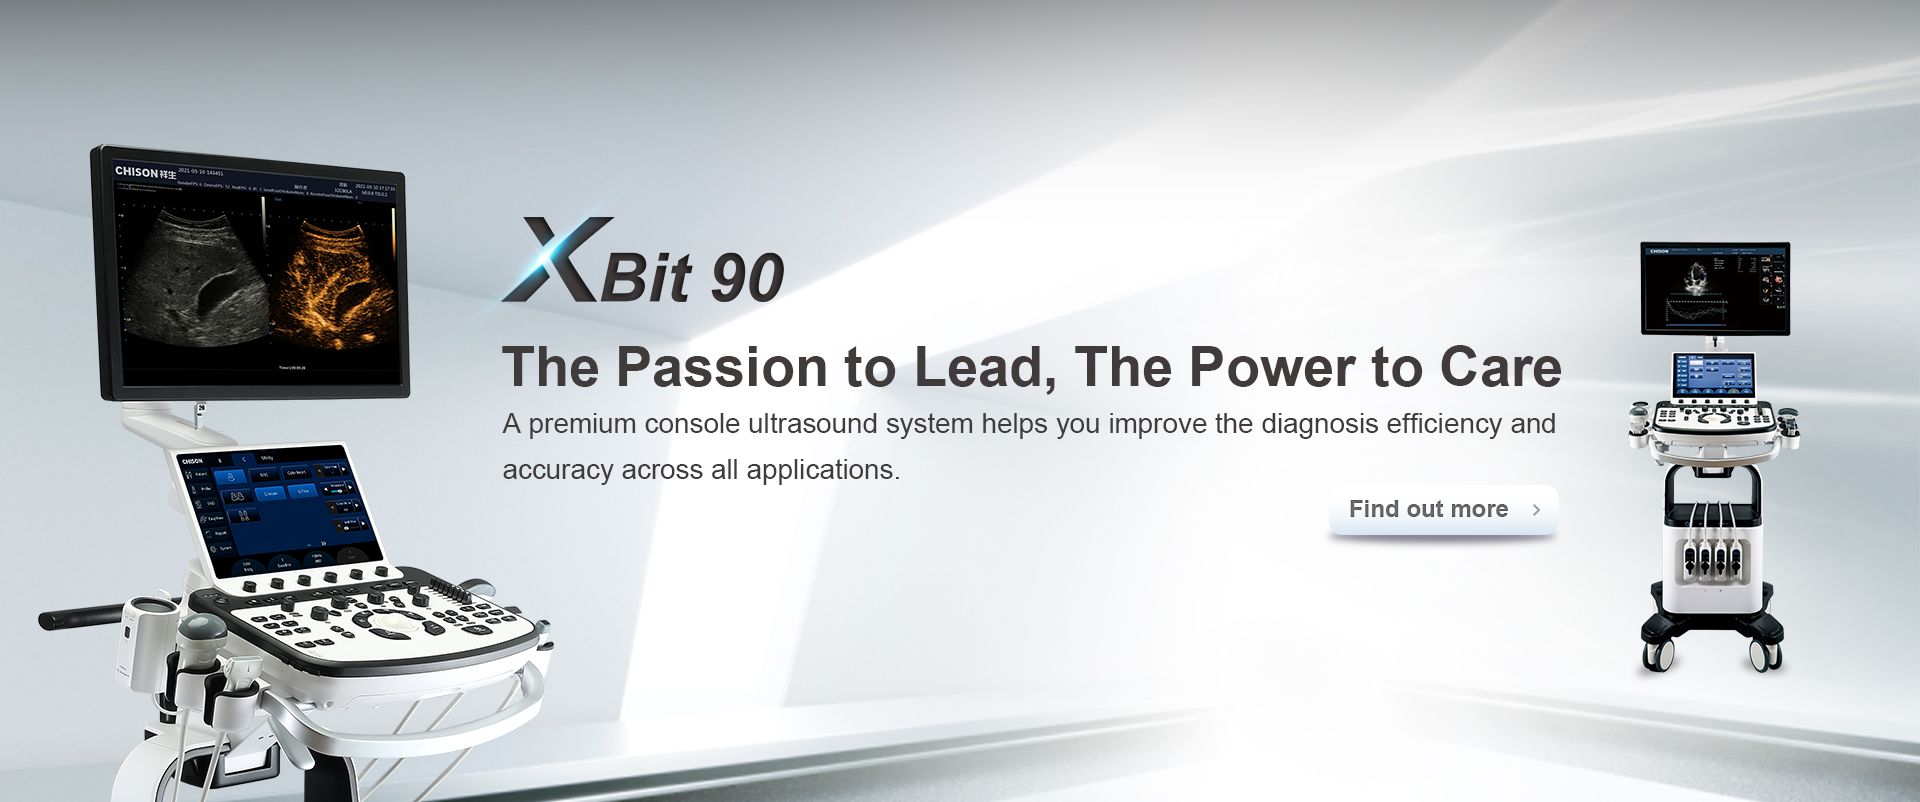 XBit 90